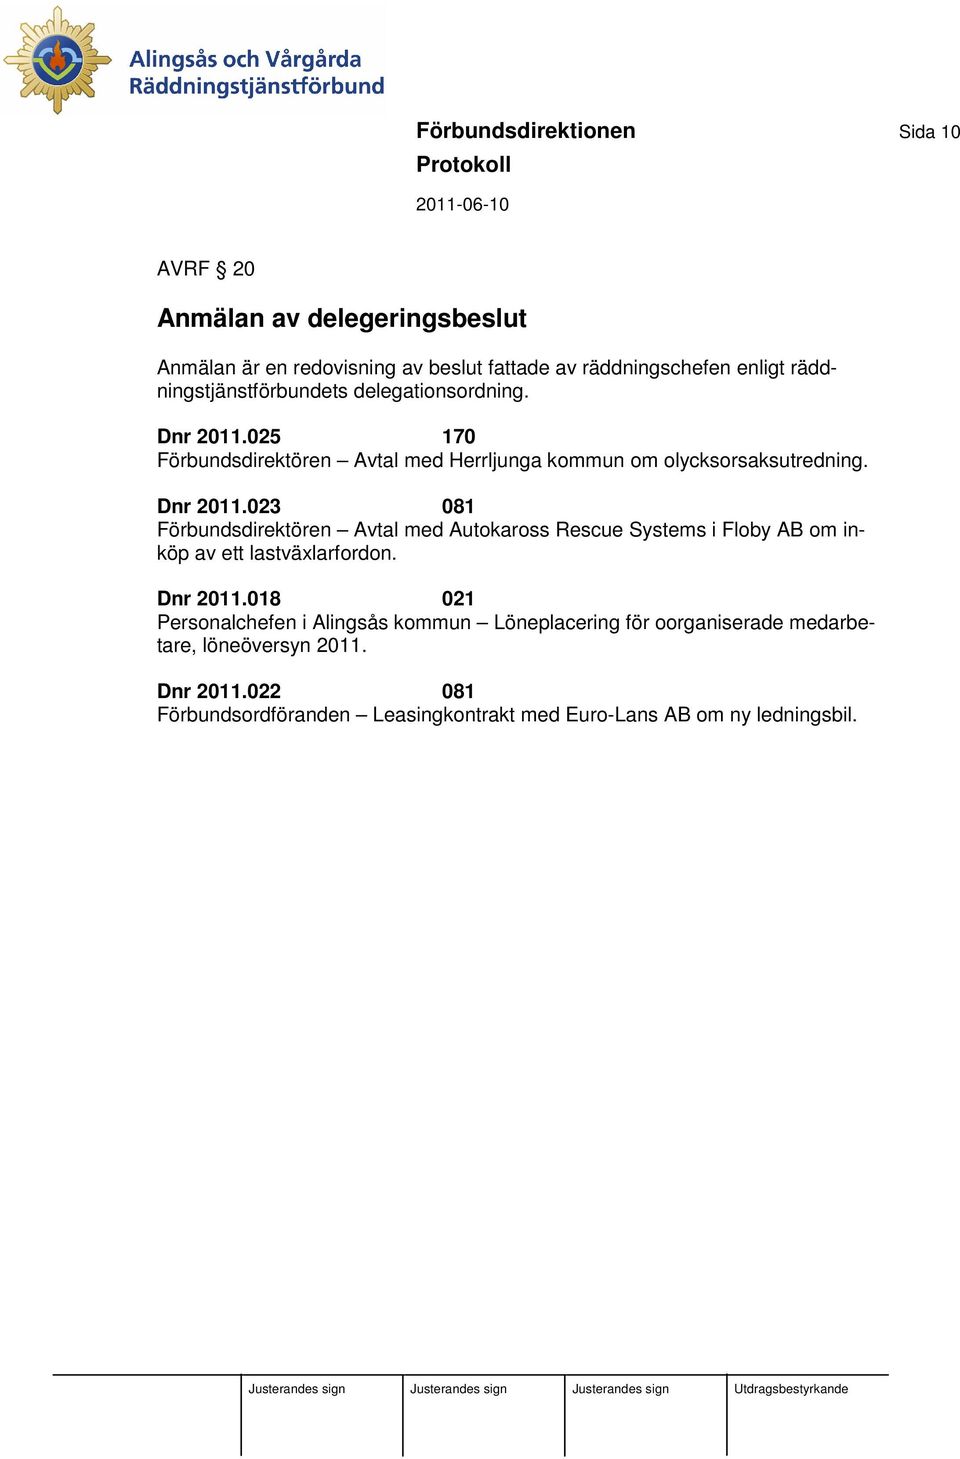 025 170 Förbundsdirektören Avtal med Herrljunga kommun om olycksorsaksutredning. Dnr 2011.